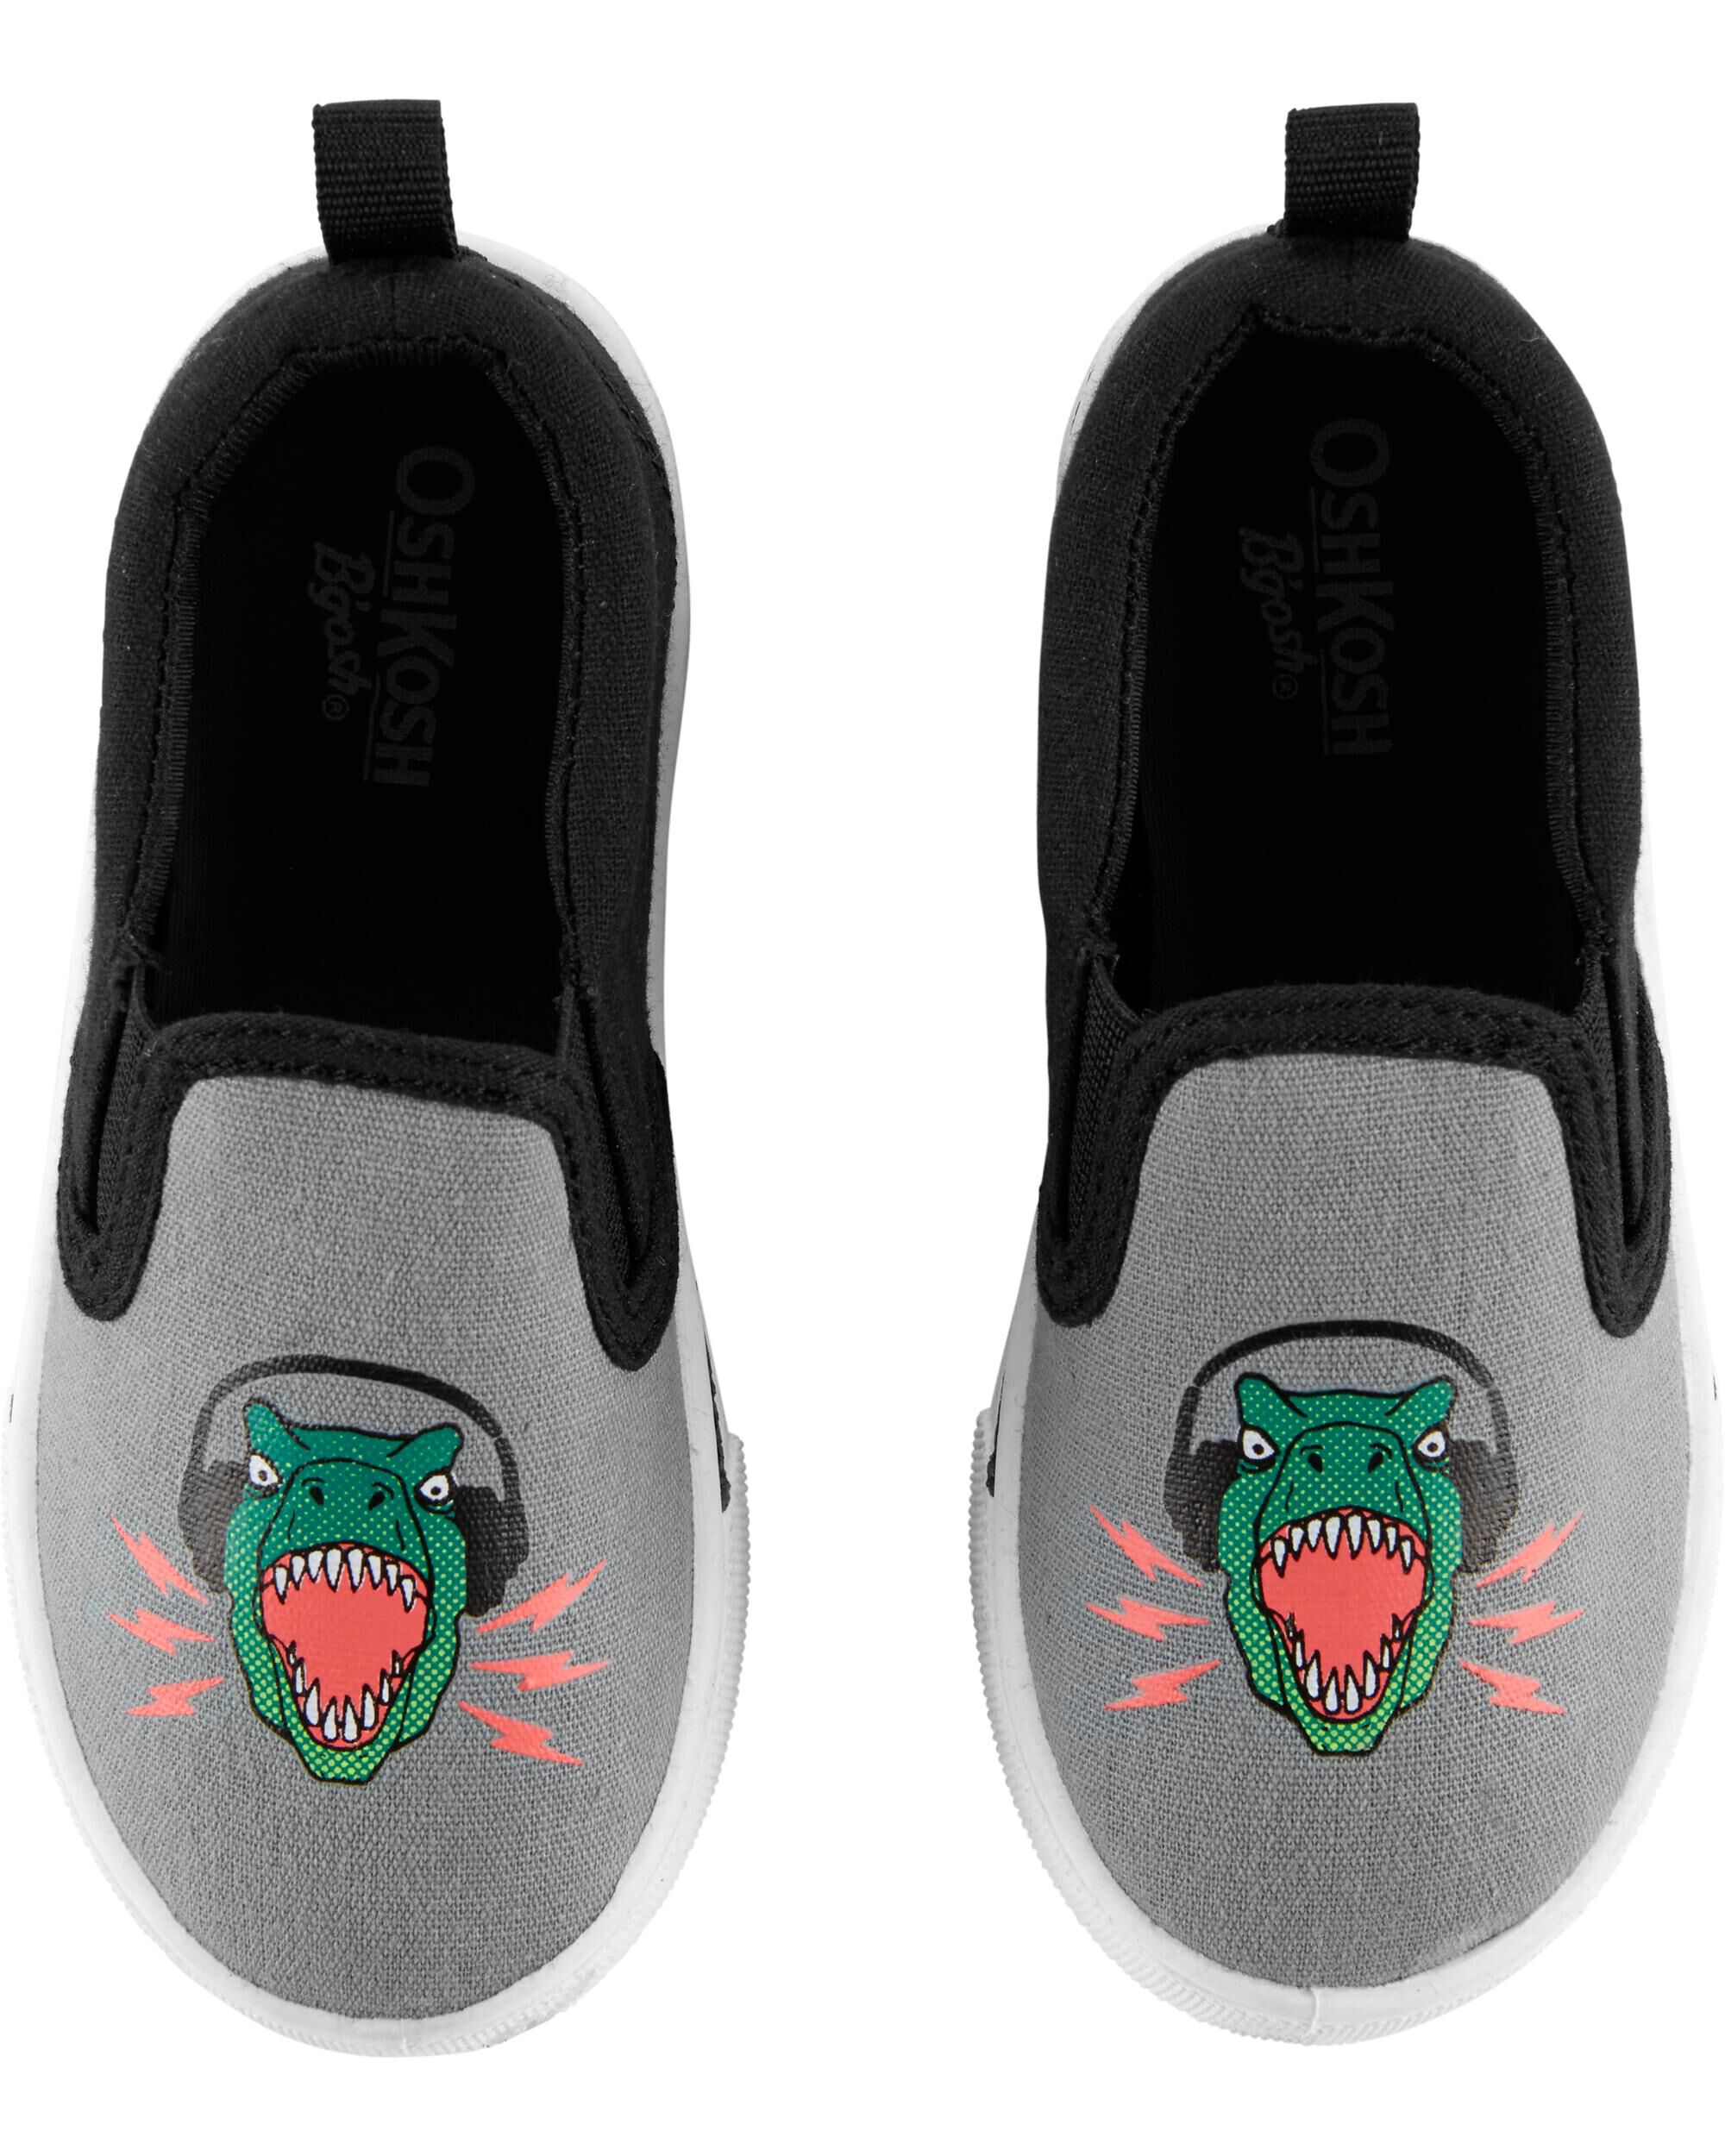 carter's dinosaur slip on shoes